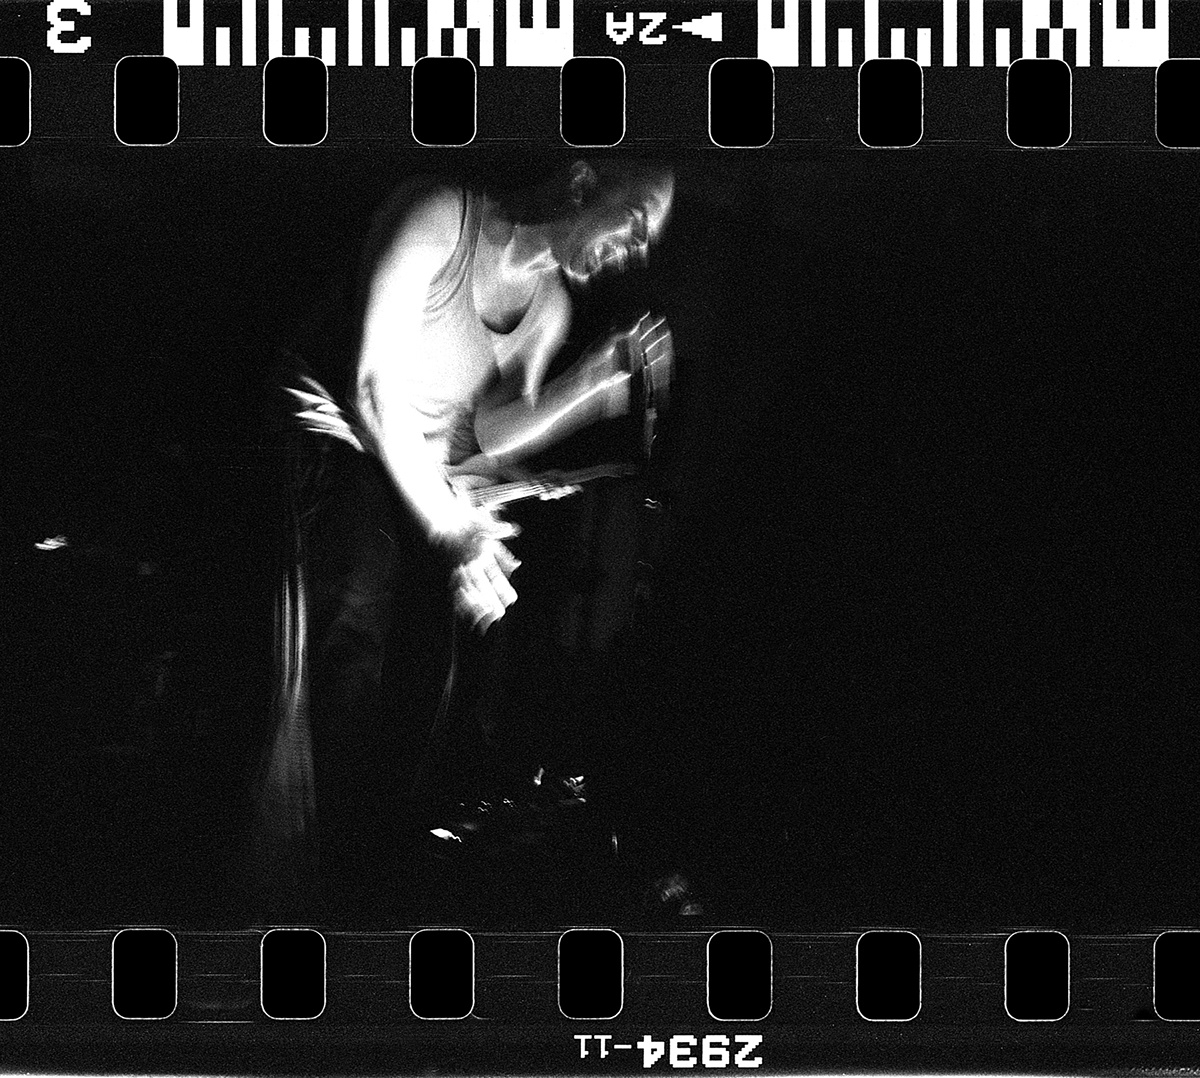 babu krol concert photography analog photography